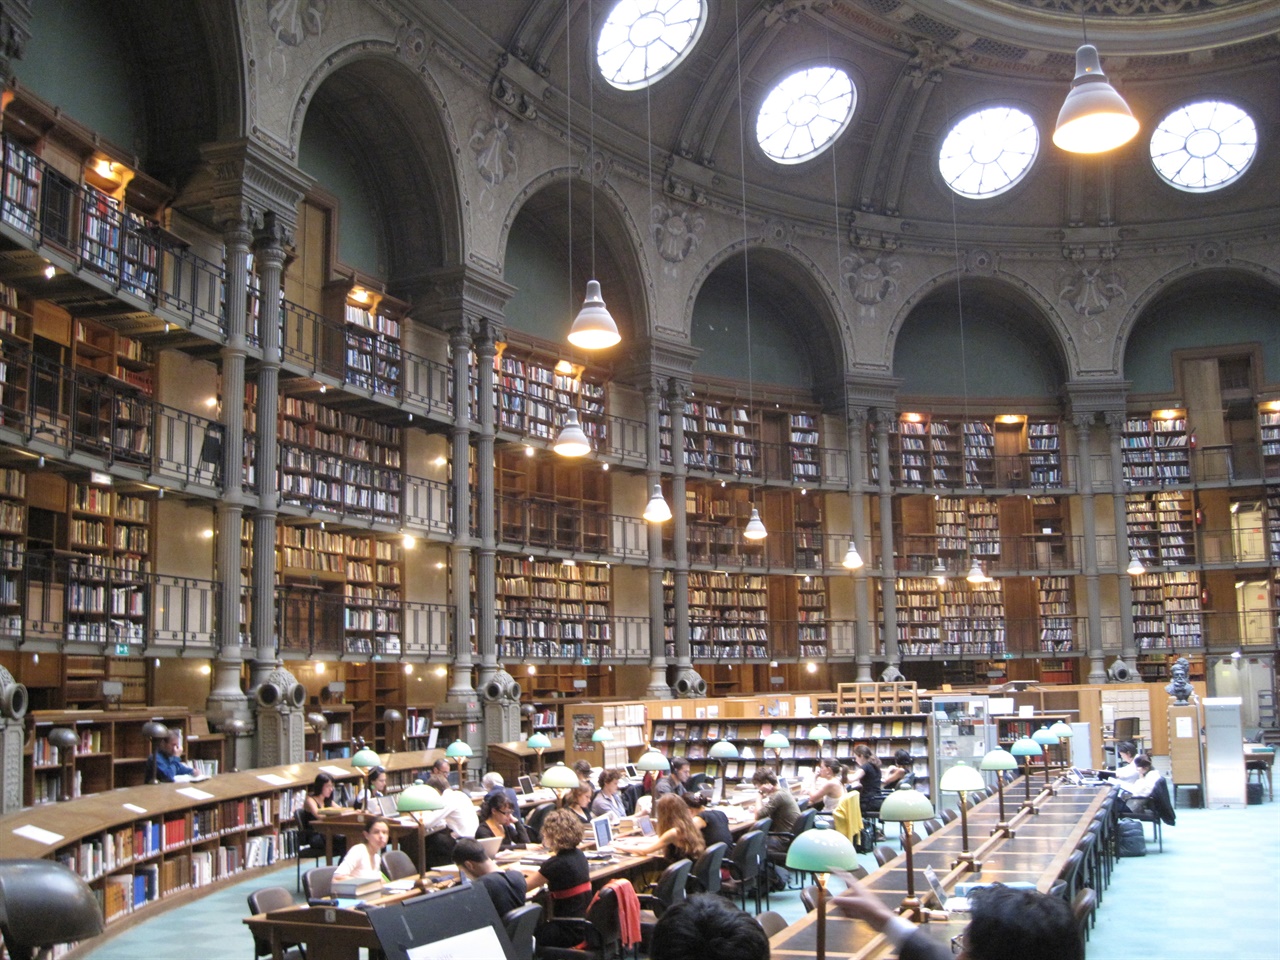 프랑스 리슐리에국립도서관의 열람실. 원형 지붕창과 은은한 조명 아래 빼곡한 서가, 진지한 이용자들이 기품 있는 분위기를 만들고 있다. 이 유서 깊은 도서관에 유일본 '직지'가 있다.